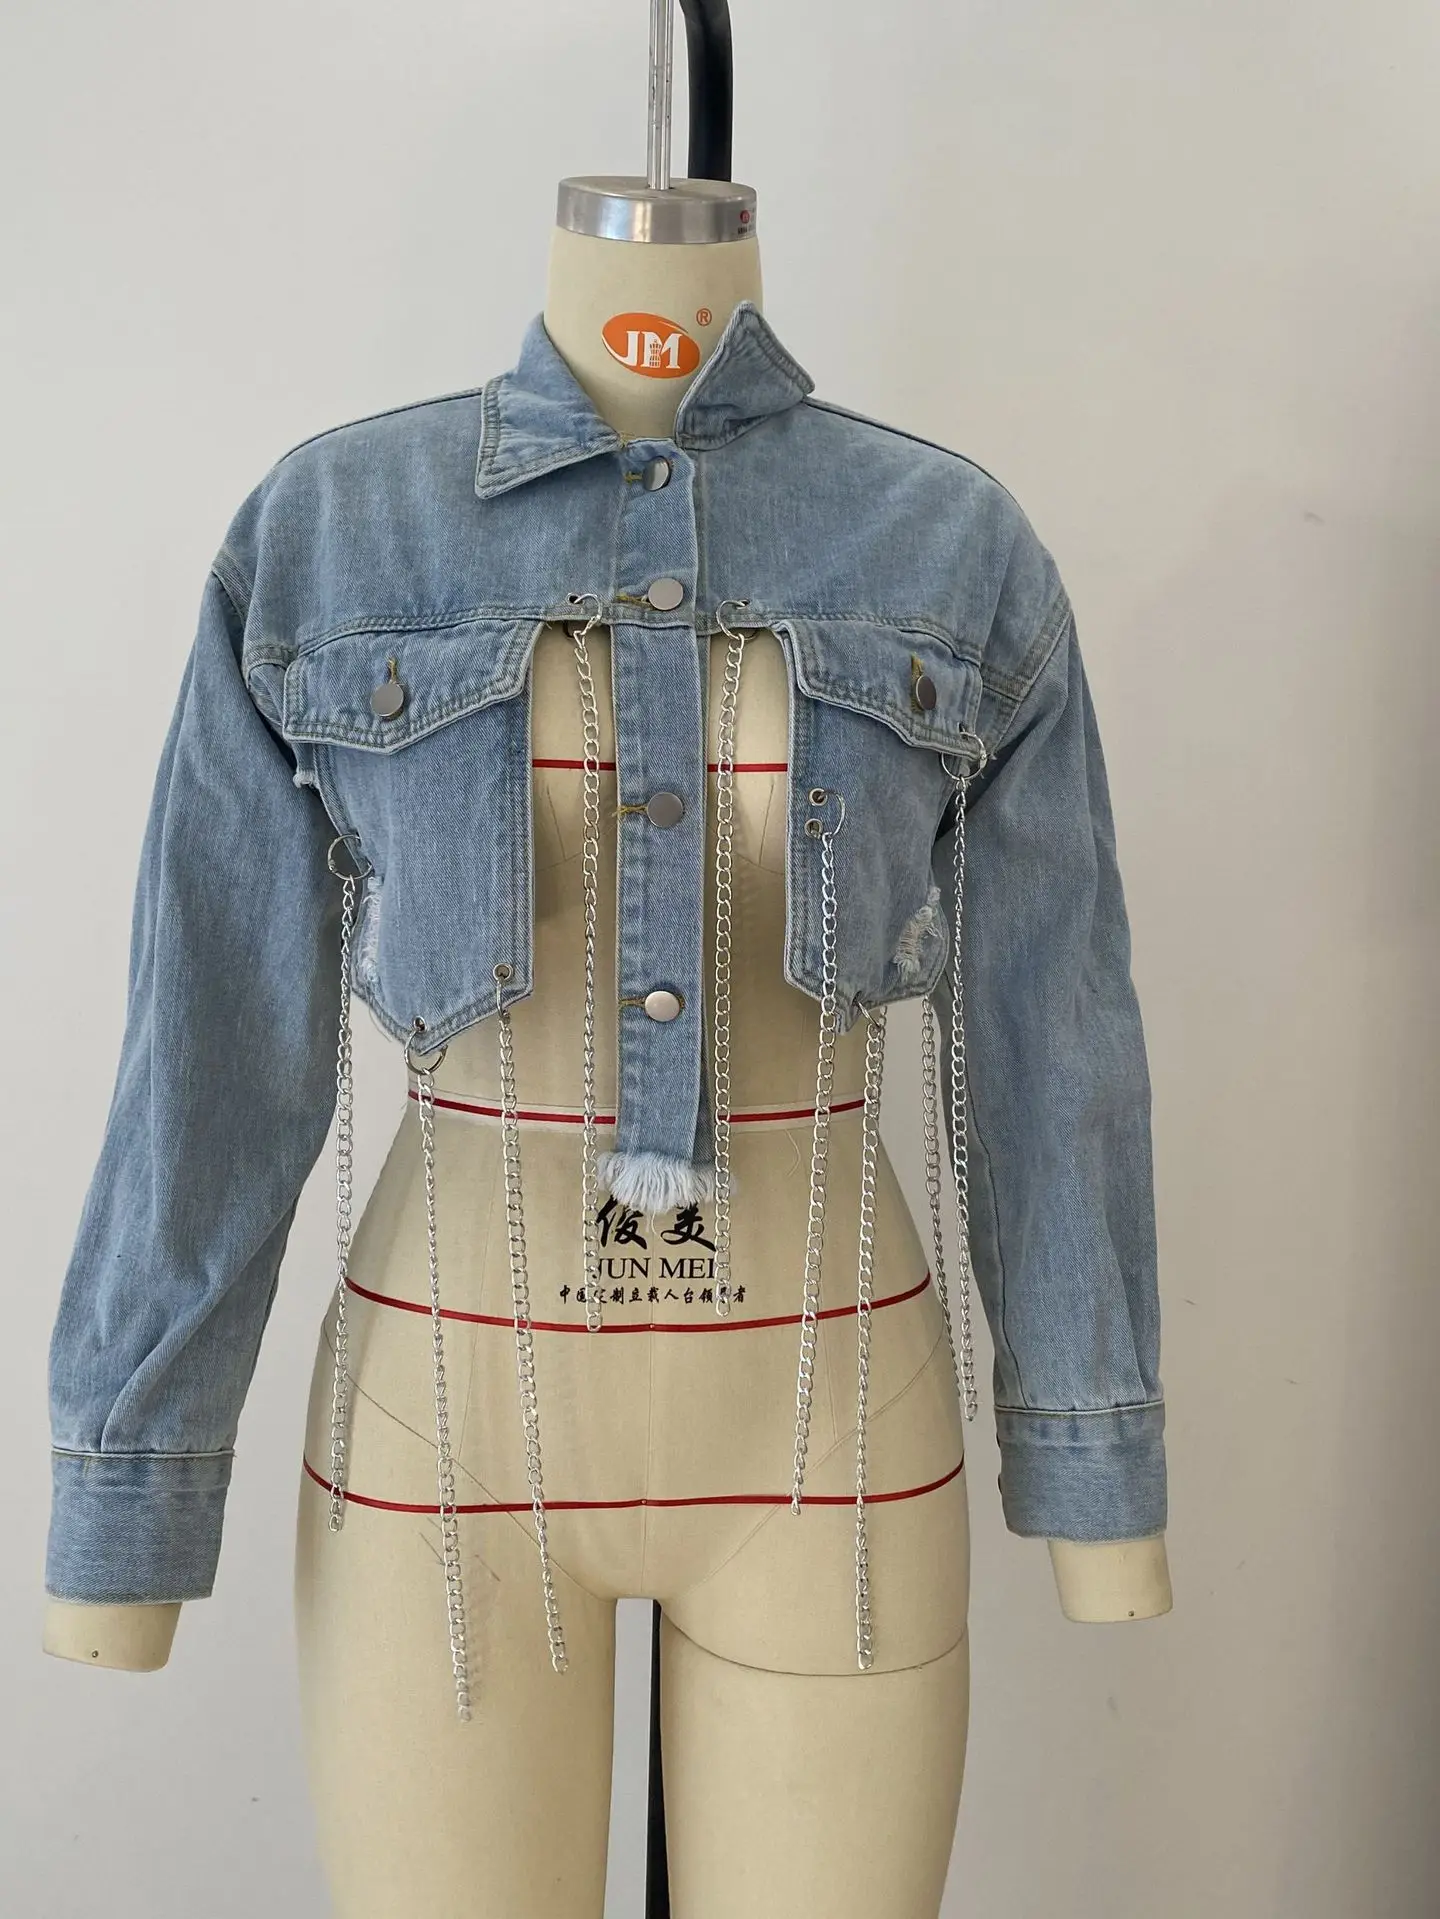 Lovemi - Short Frayed Denim Jacket Female Chain Fashion Denim